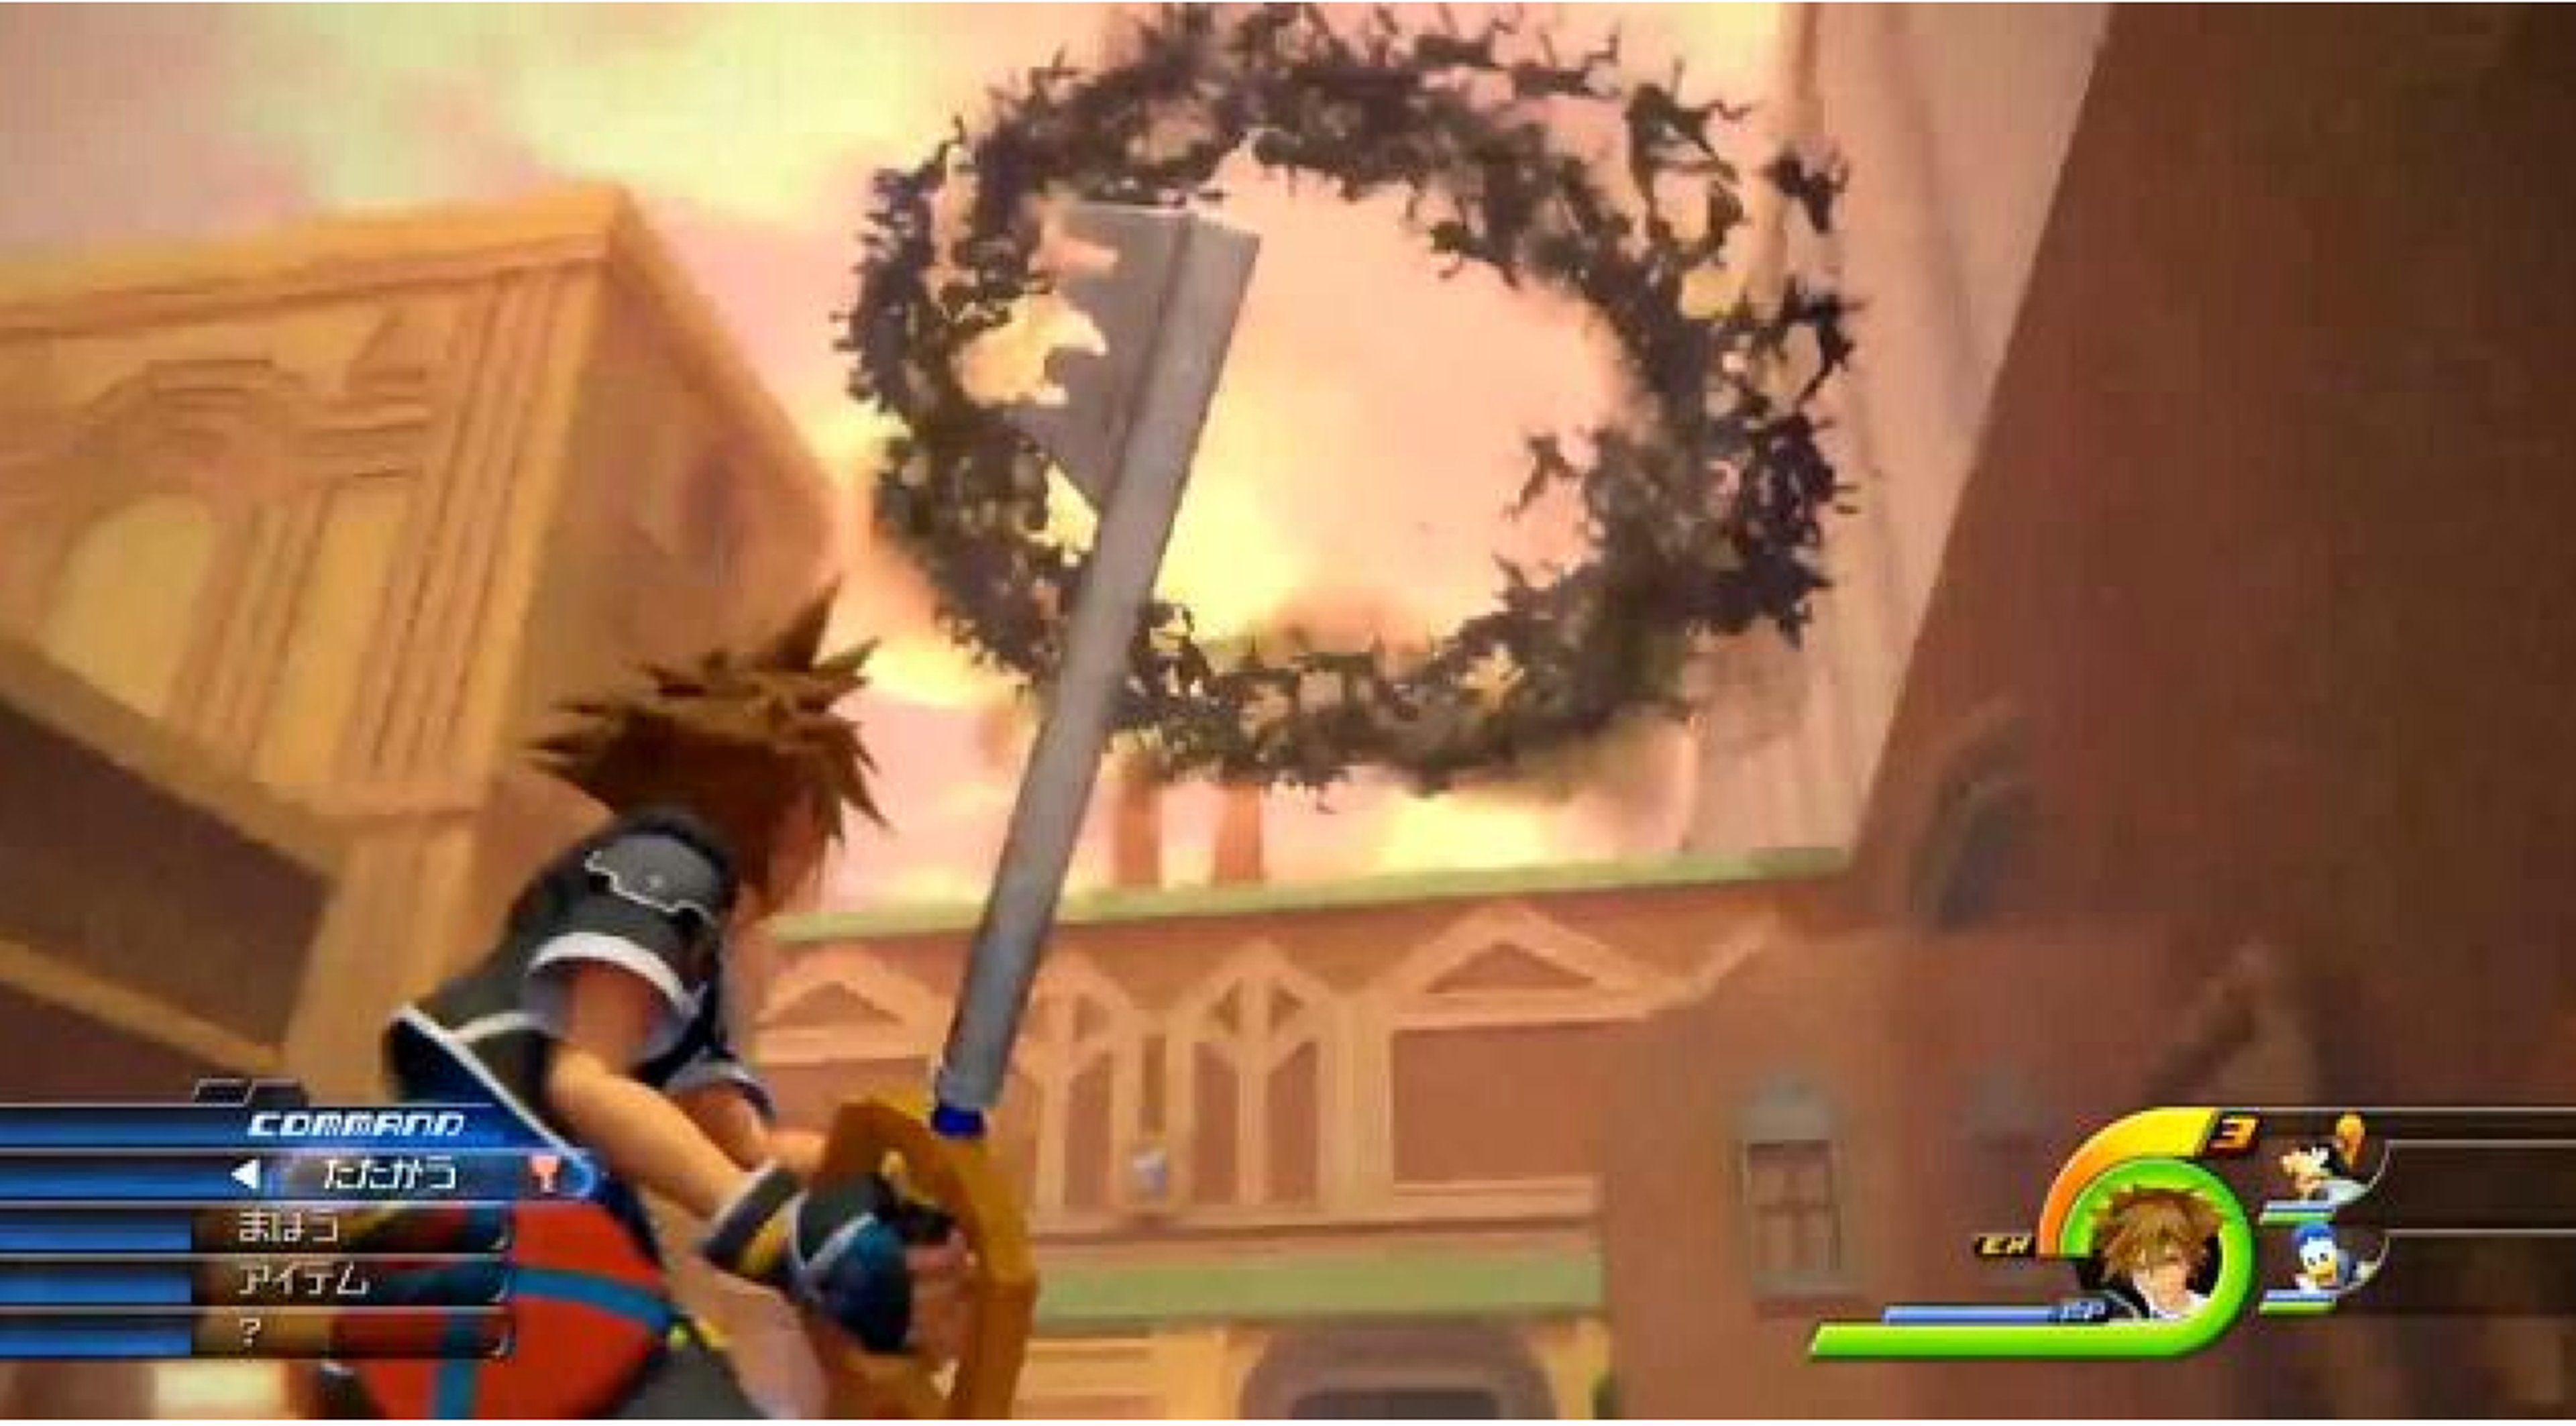 6 claves de Kingdom Hearts III